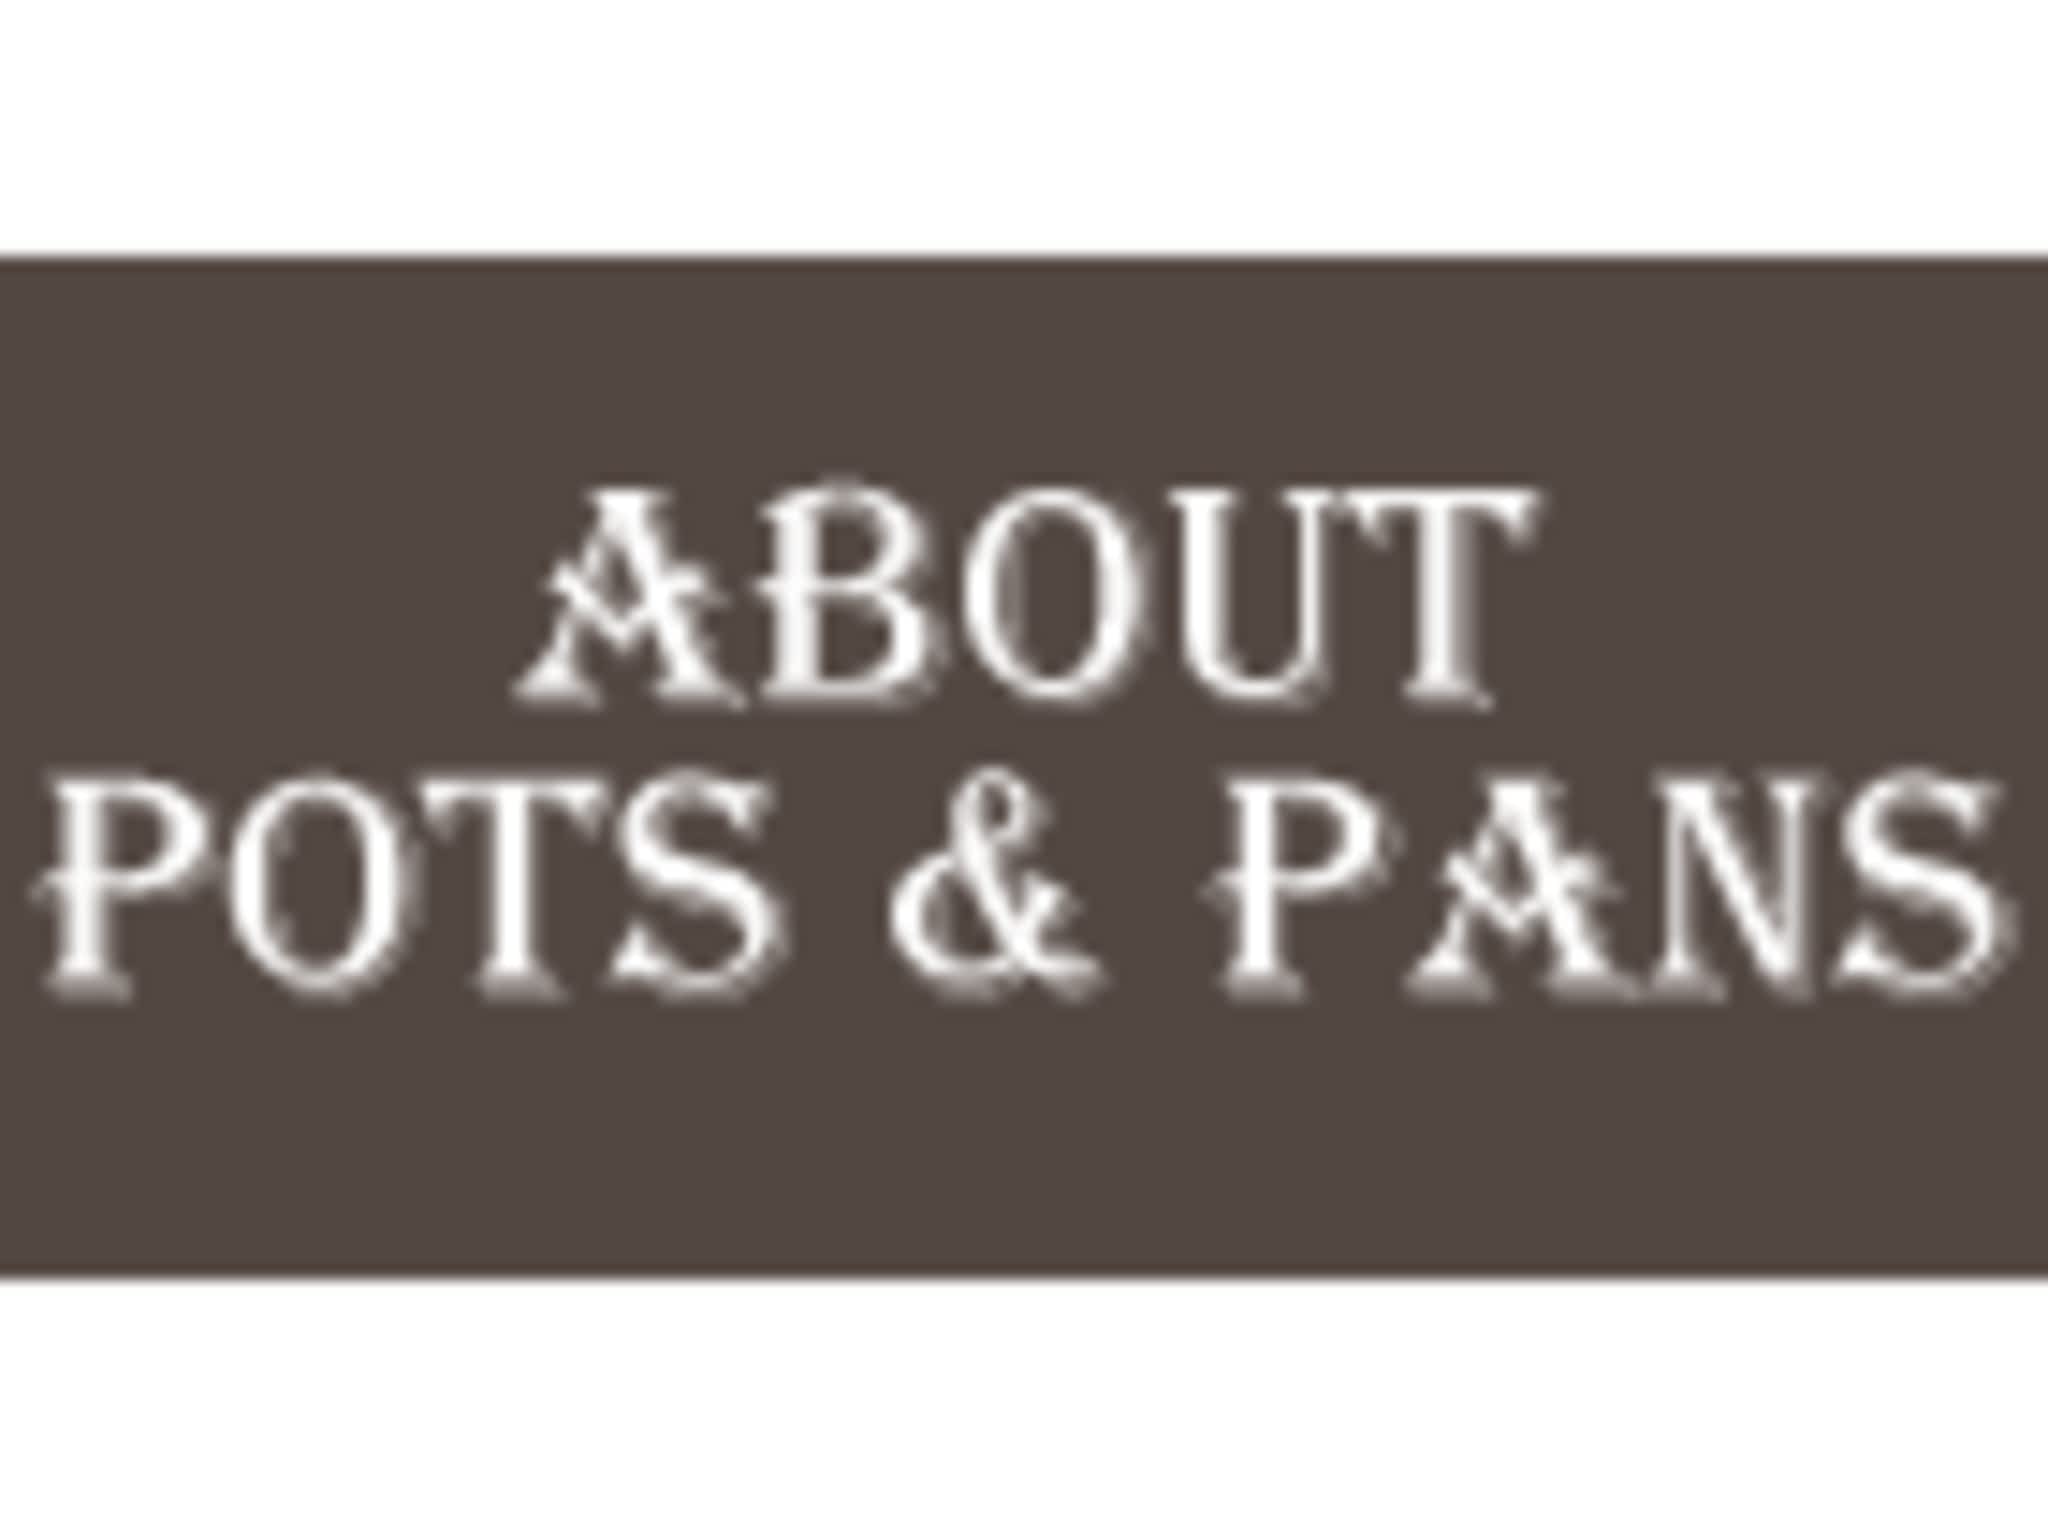 photo About Pots & Pans